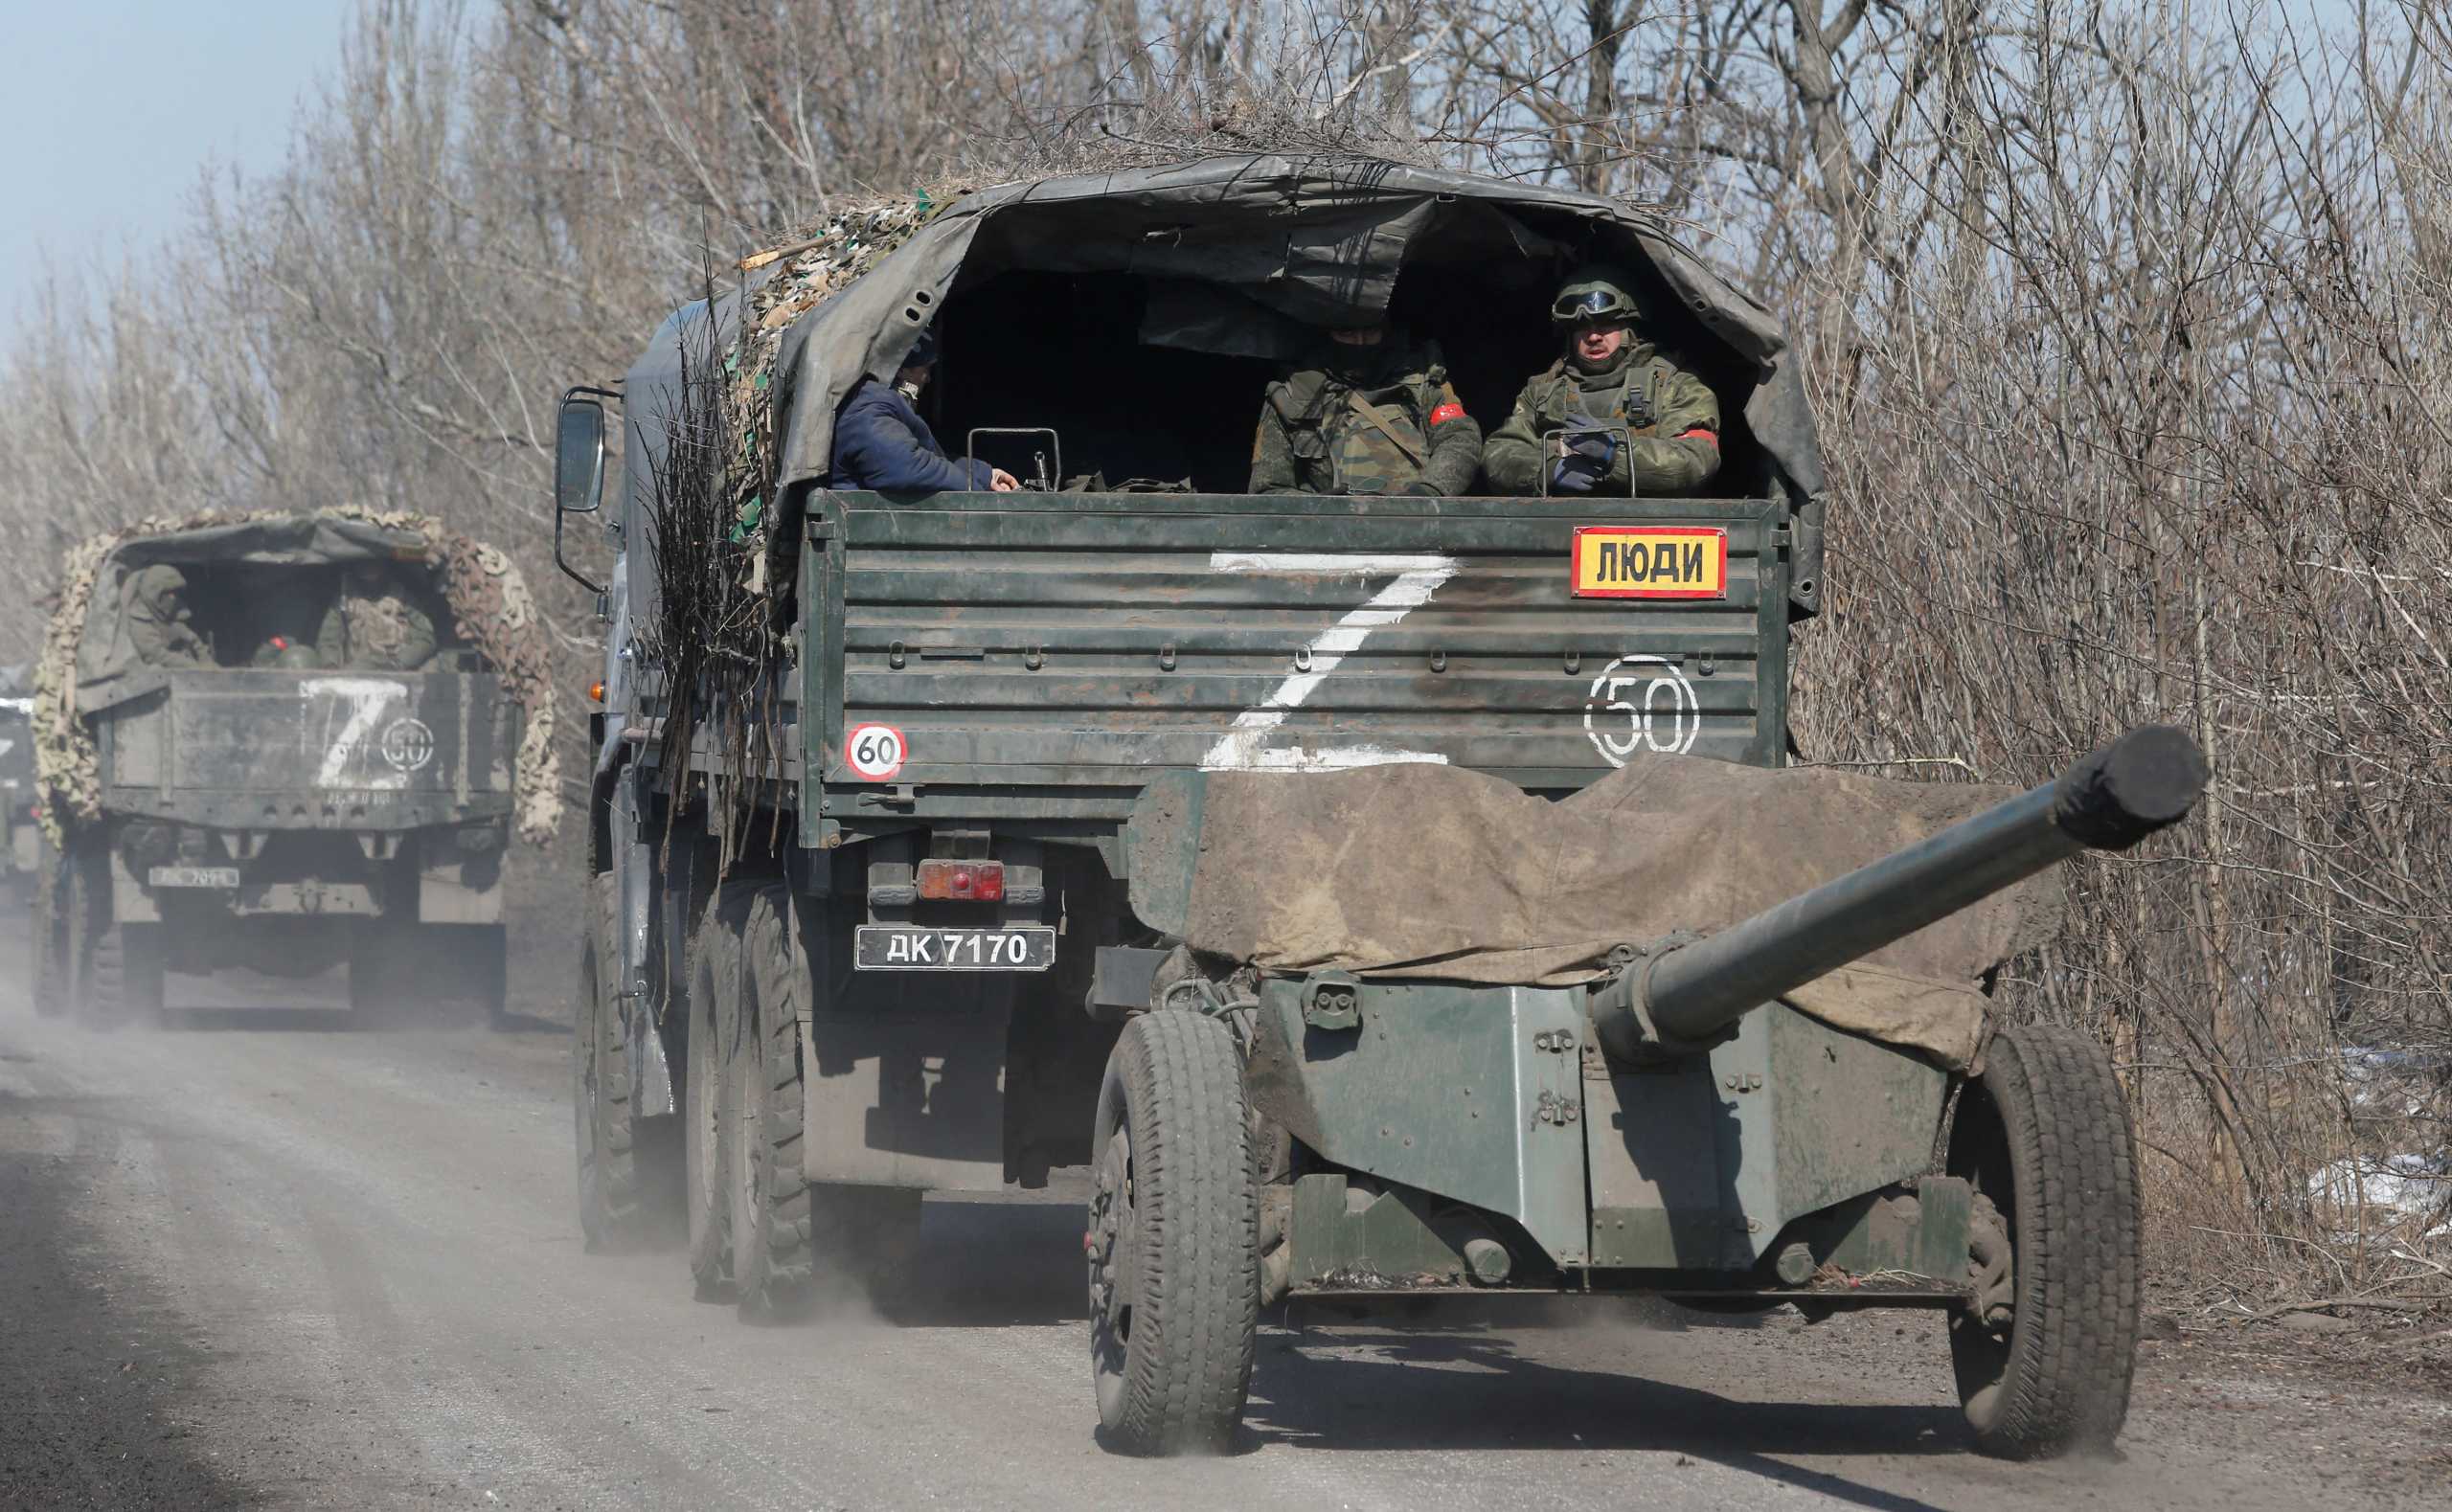 Πόλεμος στην Ουκρανία: Η Ρωσία αναγνωρίζει ότι έχει «σημαντικές στρατιωτικές απώλειες»